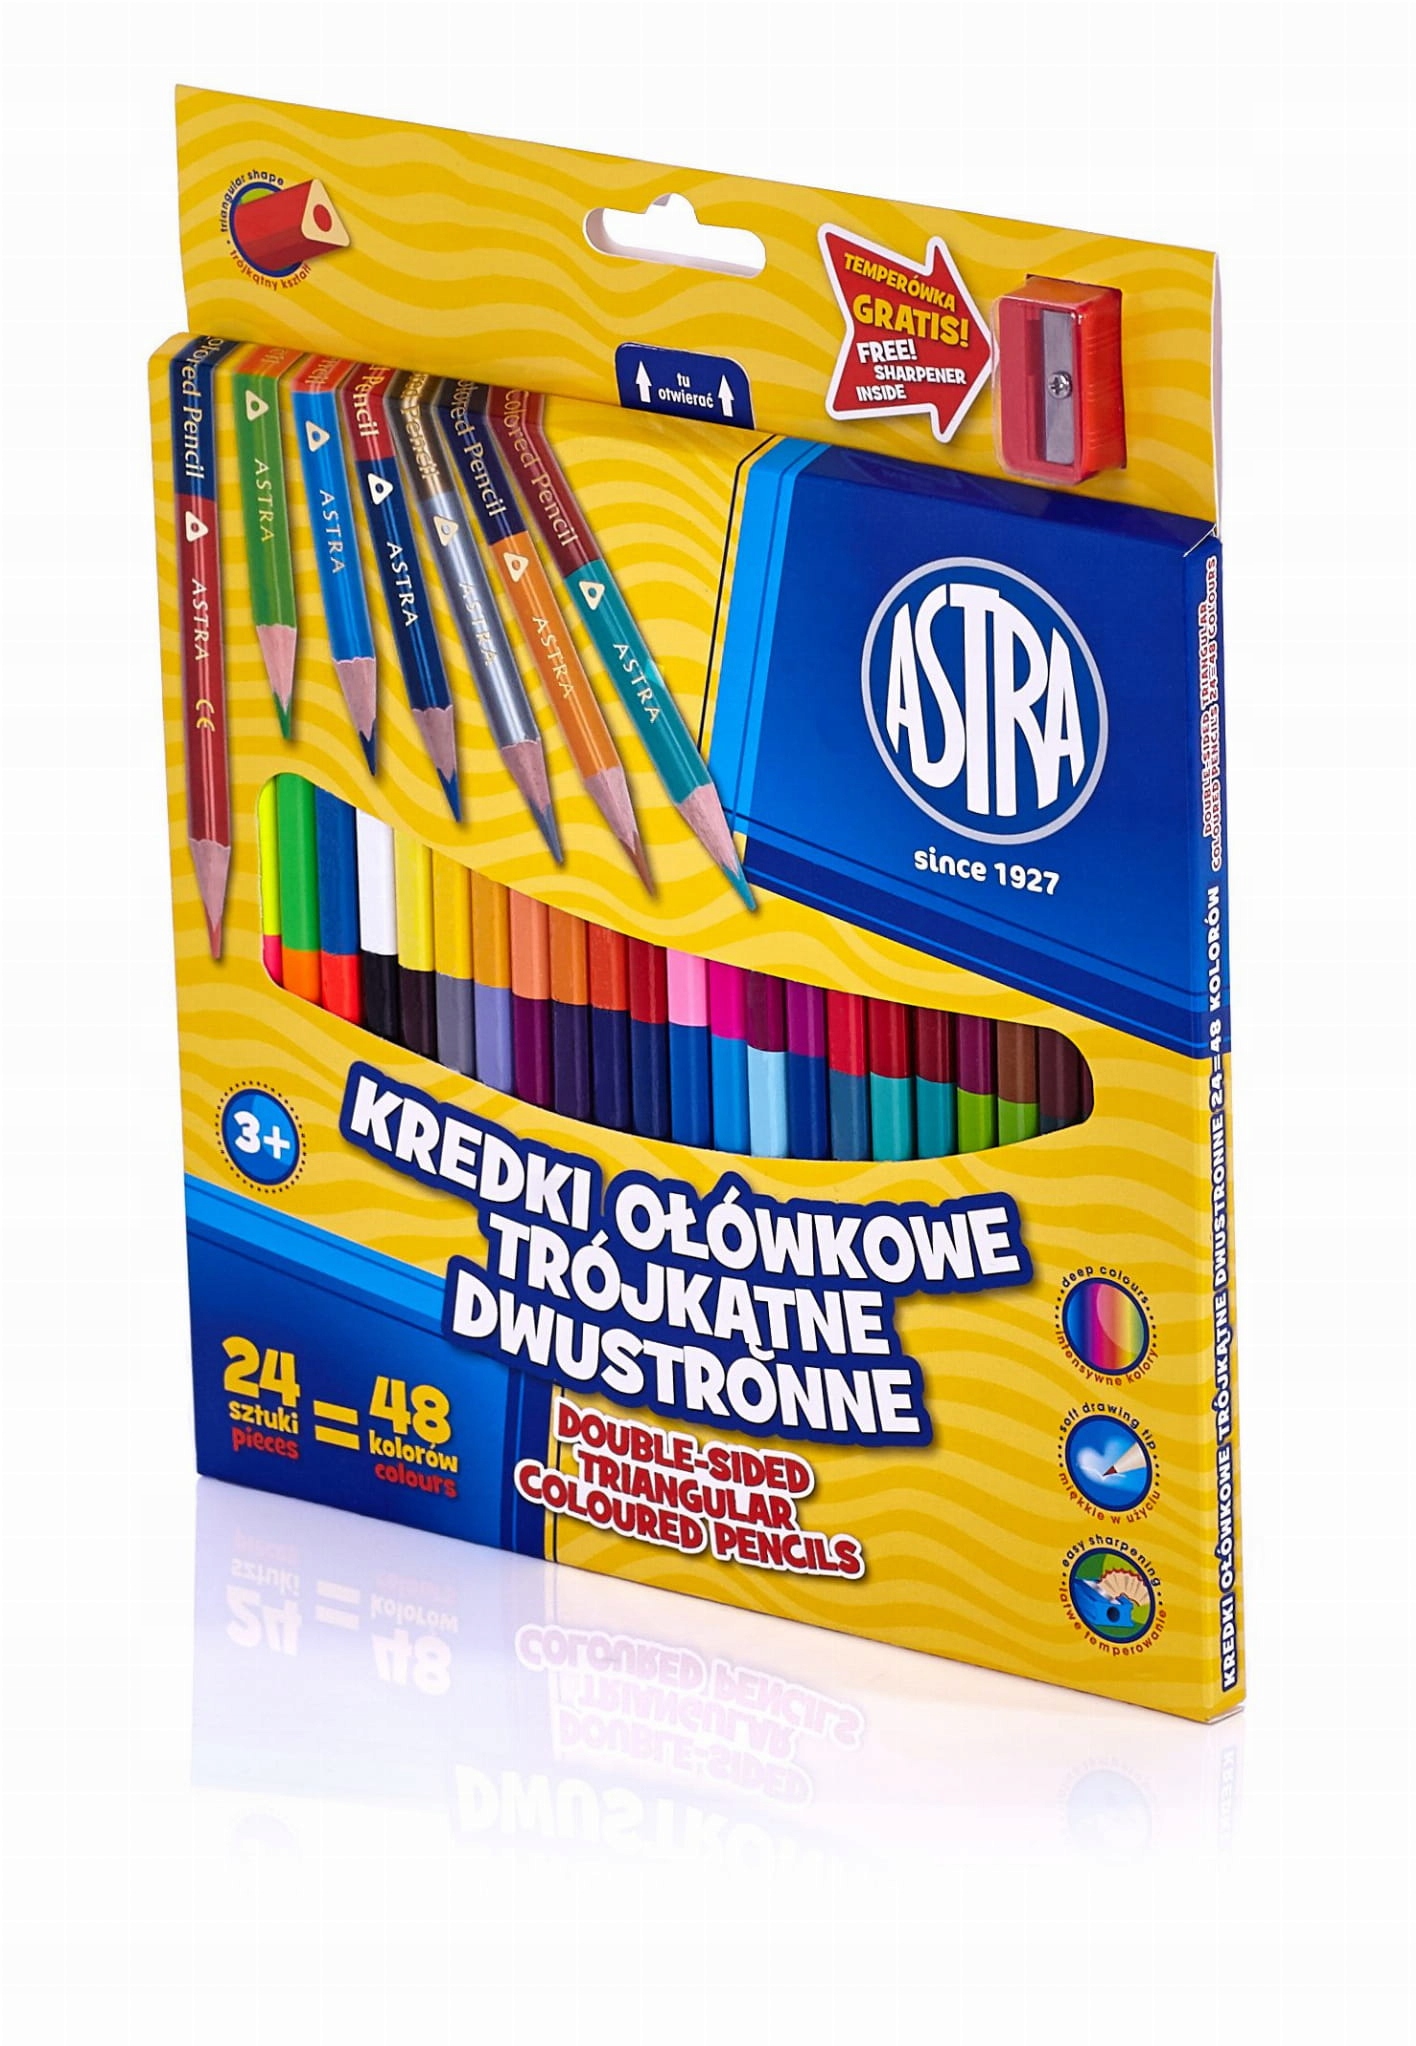 Астра карандашные карандаши двухсторонние 24/48 цвета